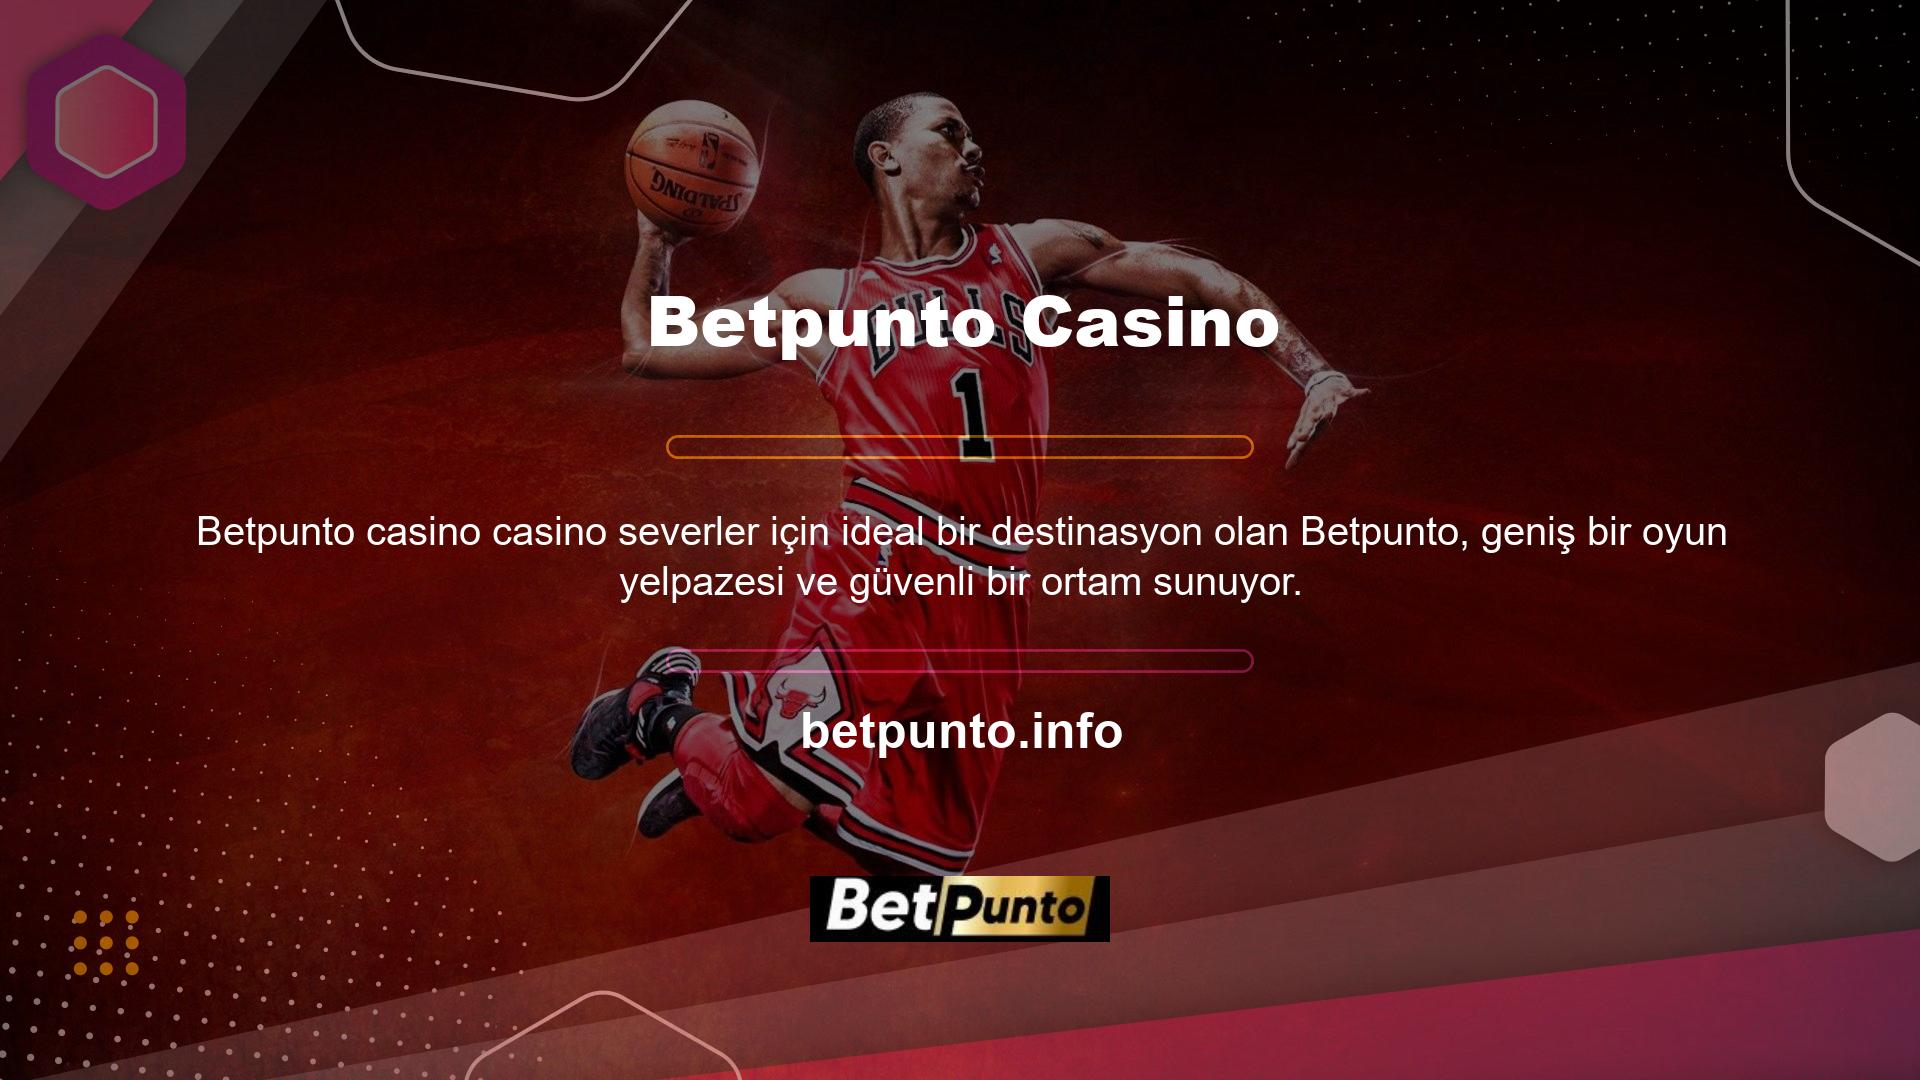 En iyi blackjack sitelerinden biri olan Betpunto, casinolar ve blackjack oyunları söz konusu olduğunda ihtiyacınız olan her şeye kolay erişim sunar